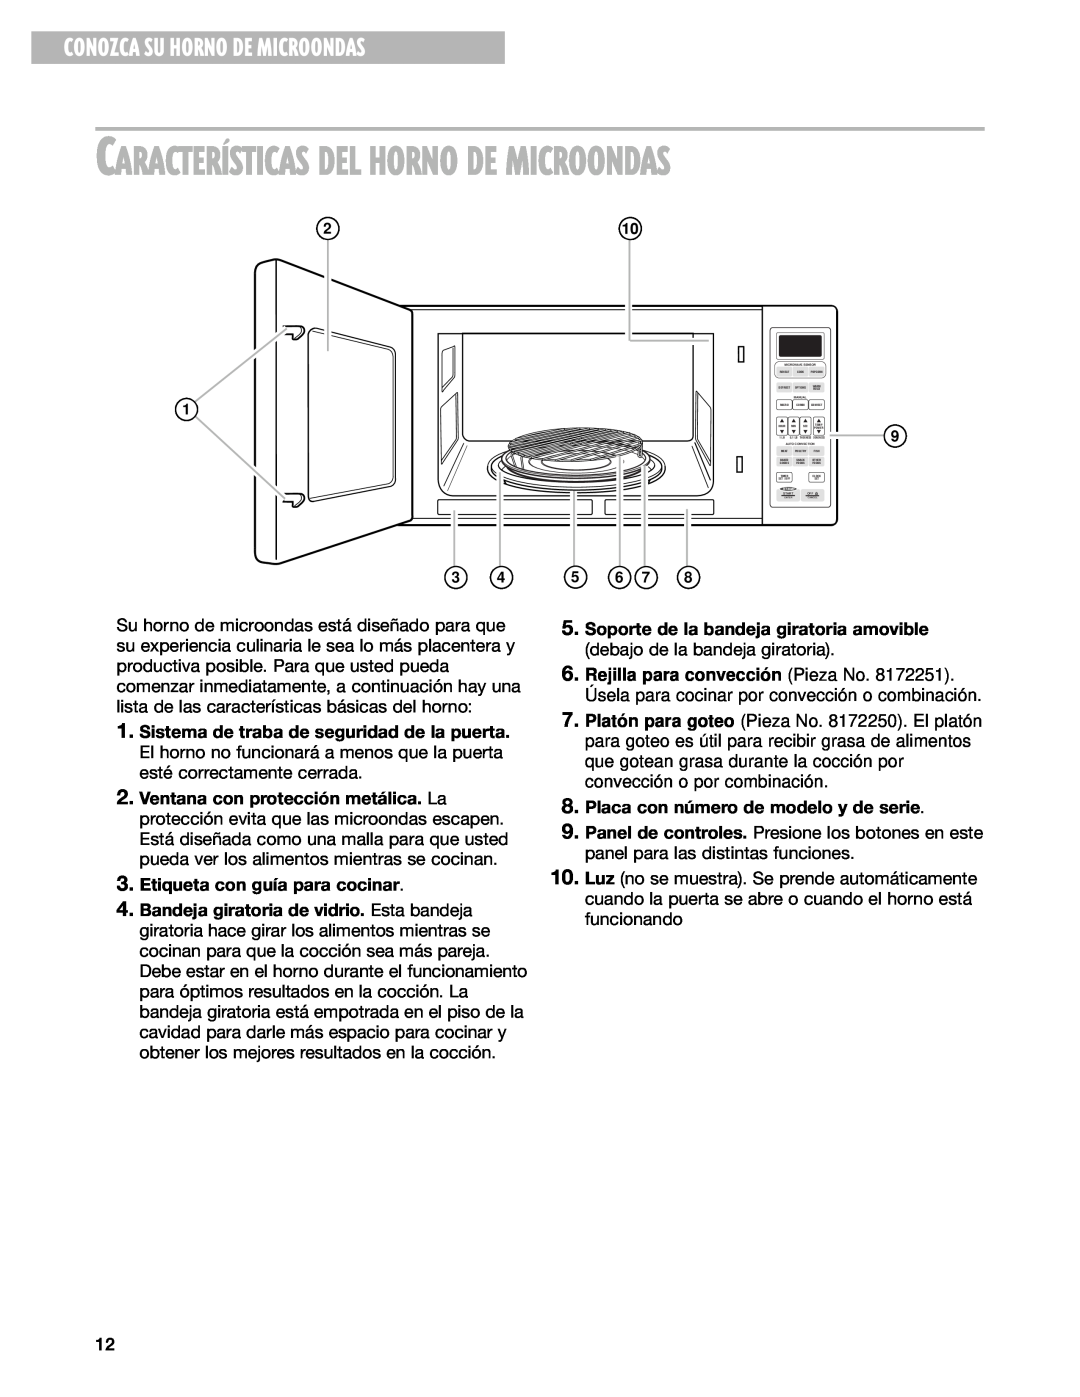 Whirlpool GM8155XJ installation instructions CARACTERêSTICAS DEL HORNO DE MICROONDAS, Conozca Su Horno De Microondas 